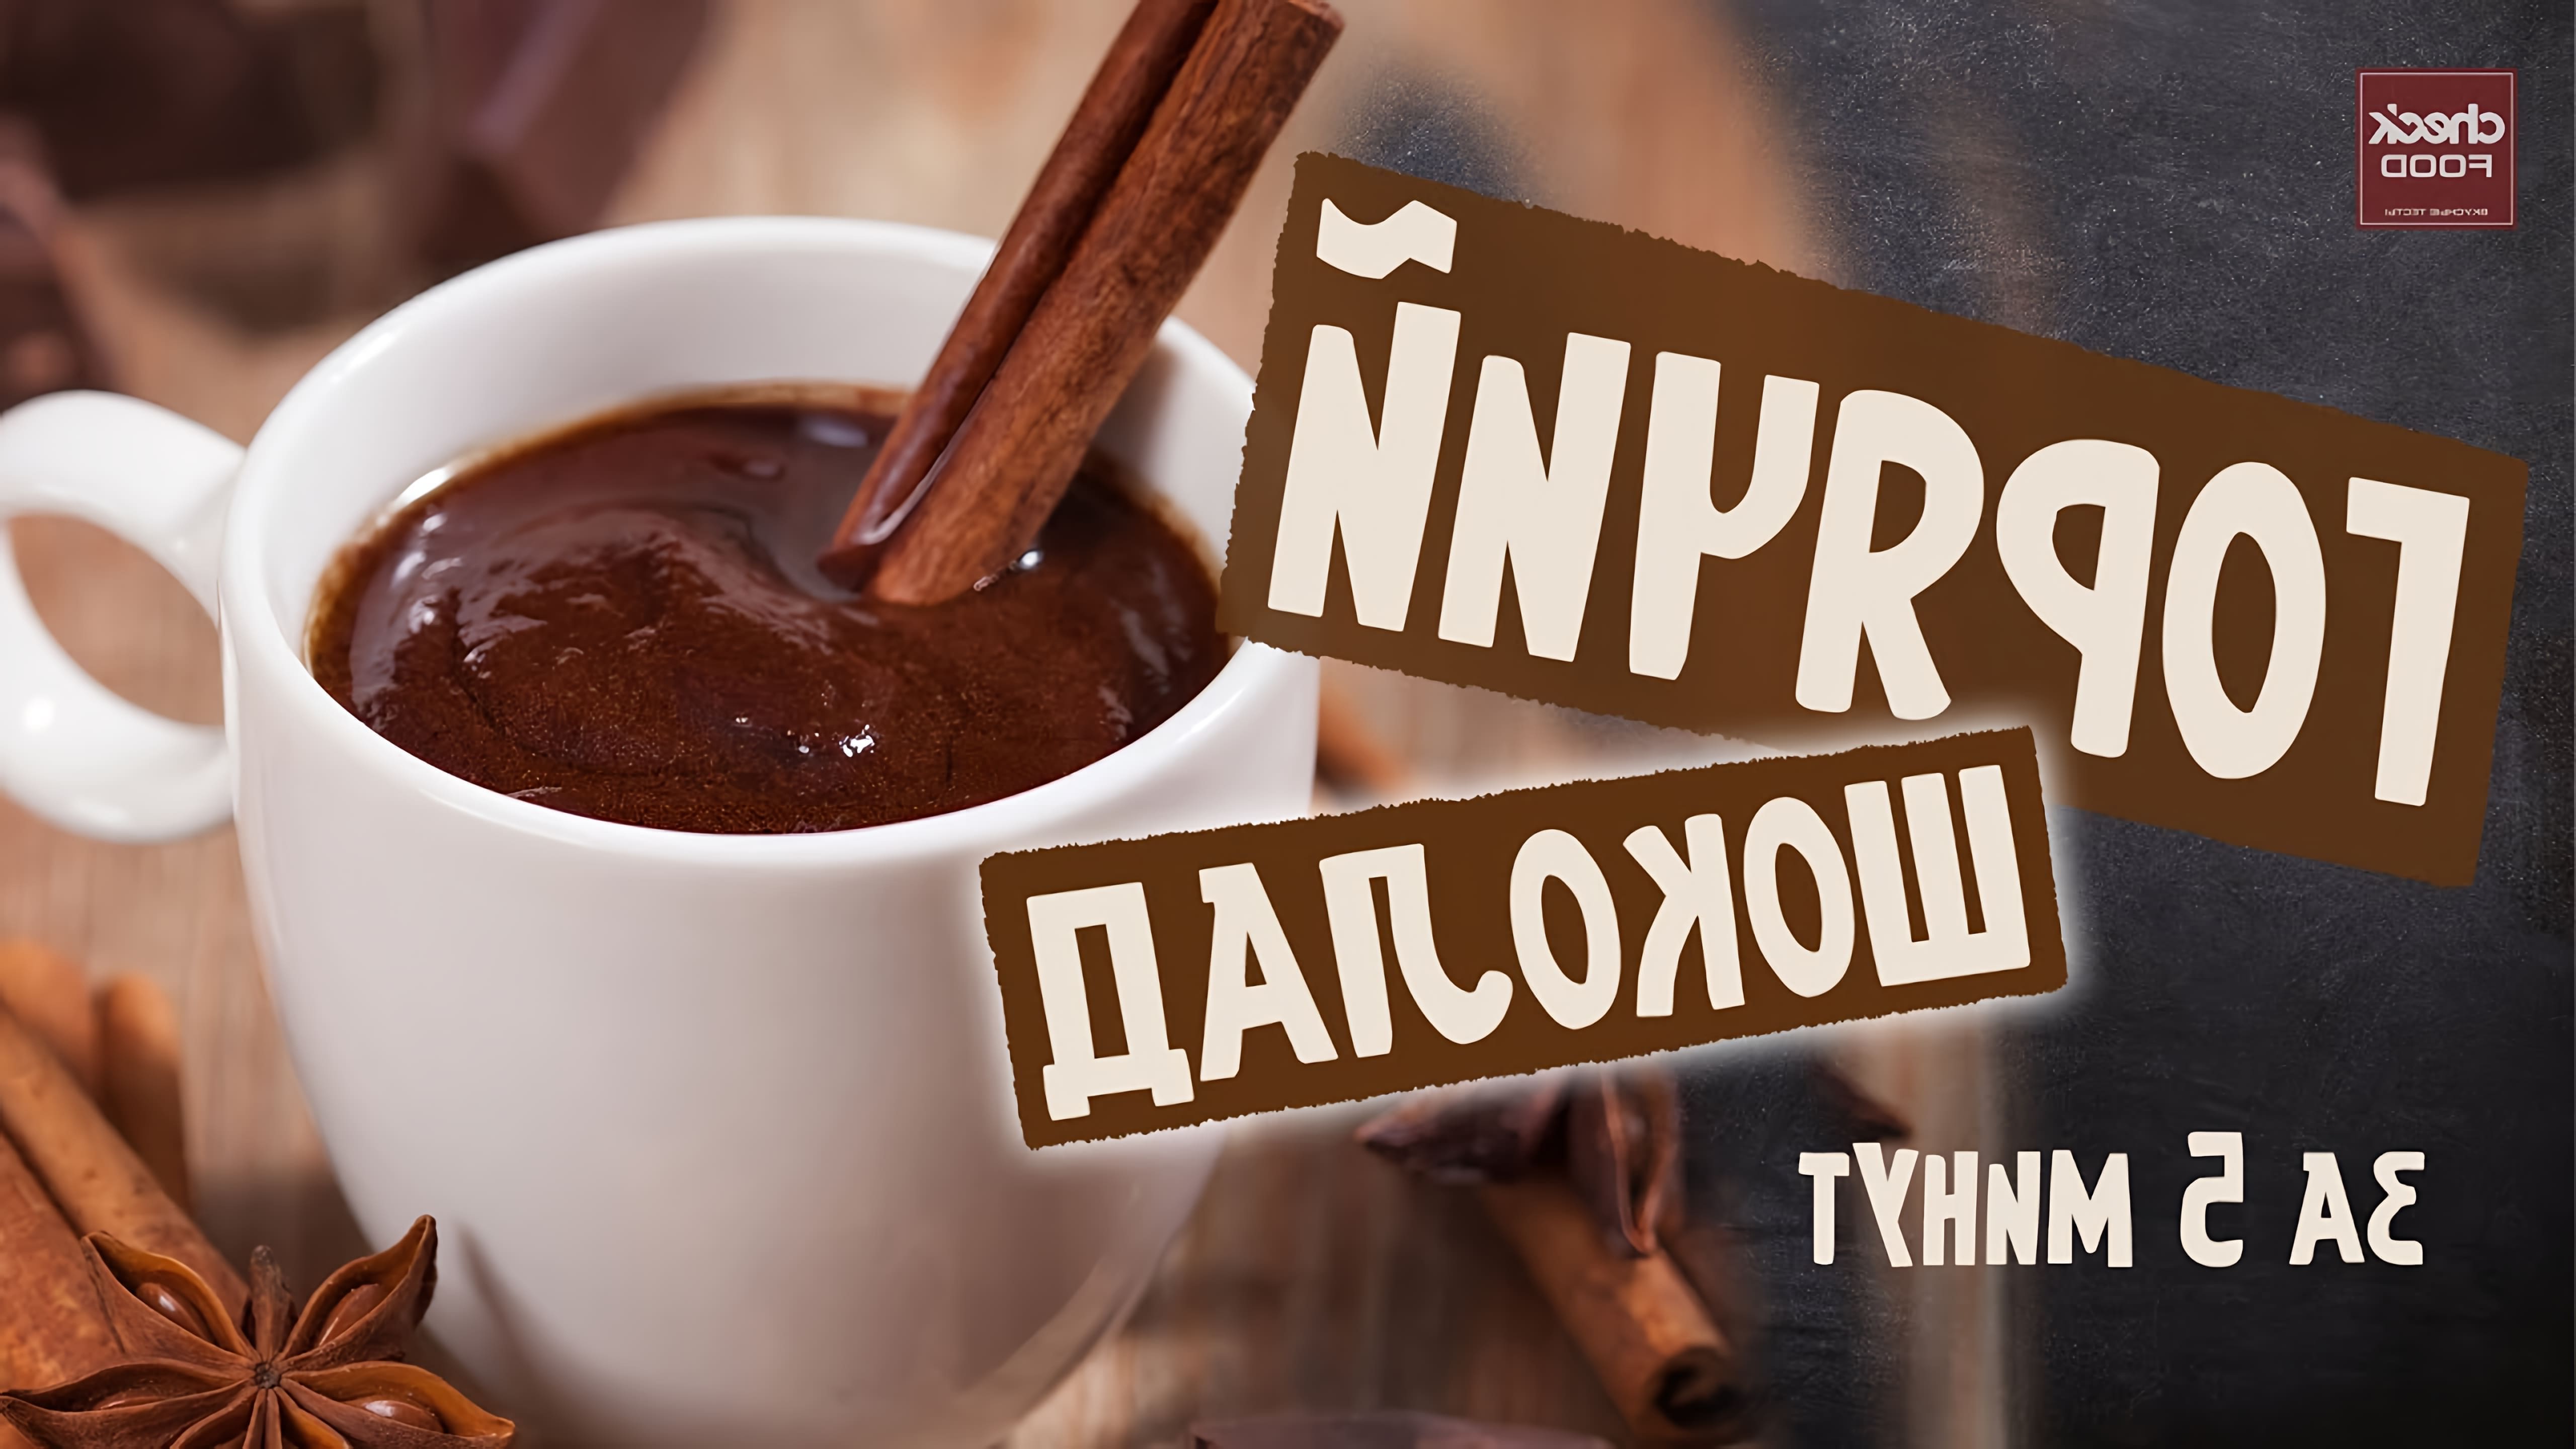 В этом видео демонстрируется простой и быстрый рецепт приготовления горячего шоколада без использования шоколада